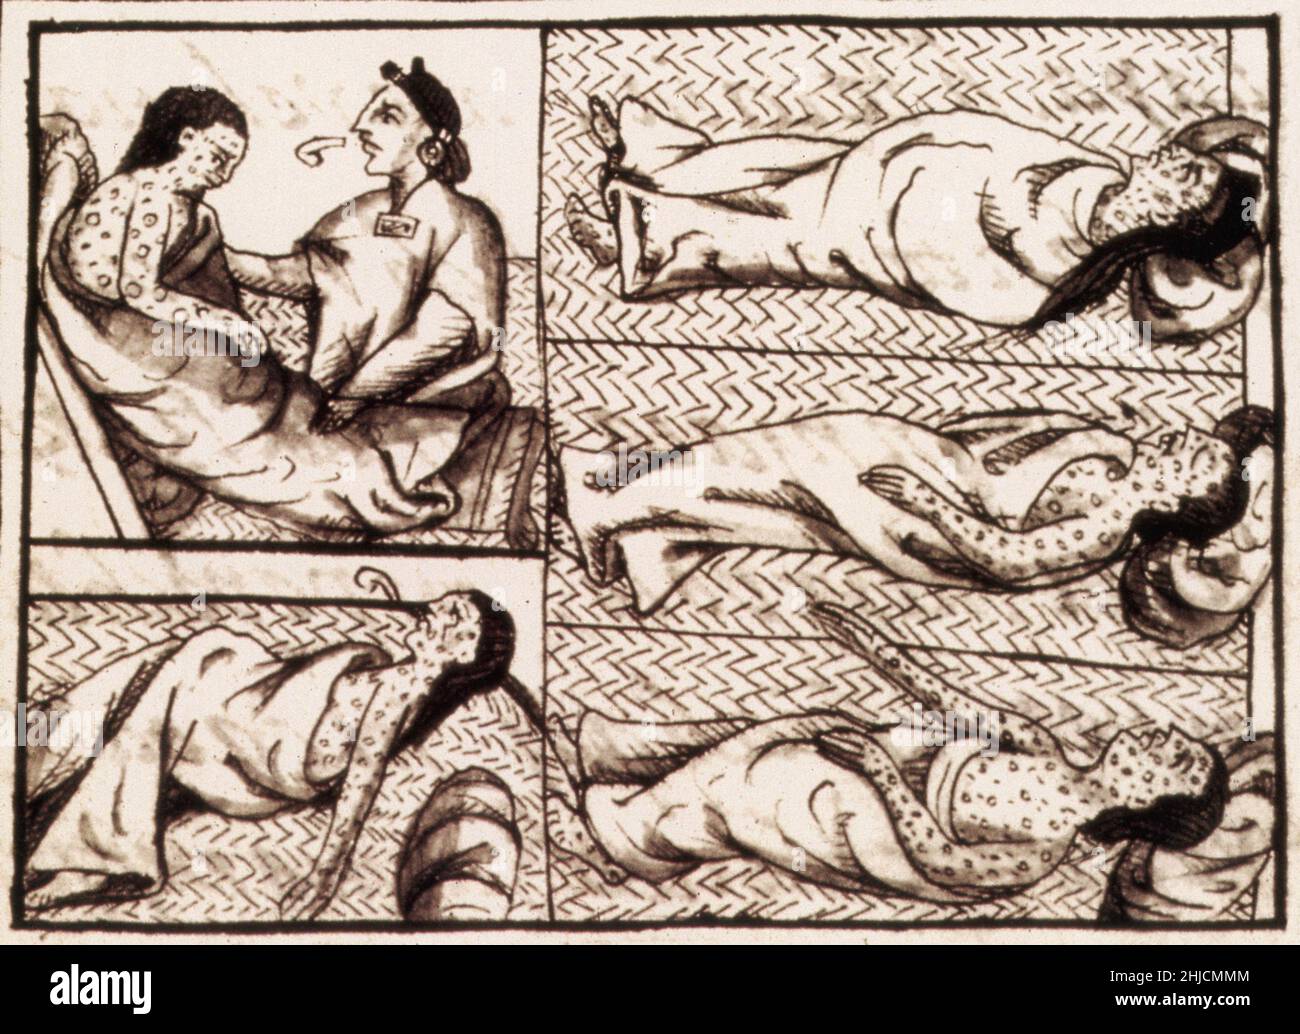 Illustration d'Aztèques mourant de la variole.Les conquistadors espagnols d'Hernan Cortes (1485-1547) ont apporté en Amérique centrale des maladies européennes qui se sont avérées bien plus mortelles pour les populations autochtones que les armes étrangères.Ici, le Codex florentin (compilé 1540-1585) montre les Aztèques mourant de la variole, contre laquelle ils n'avaient aucune défense.Le Codex florentin comprend douze livres compilés à la fin du 16th siècle par les Espagnols conquêtes et remplis de copies de matériel original d'enregistrement de conversations avec les peuples autochtones.Il est plein d'illustrations. Banque D'Images